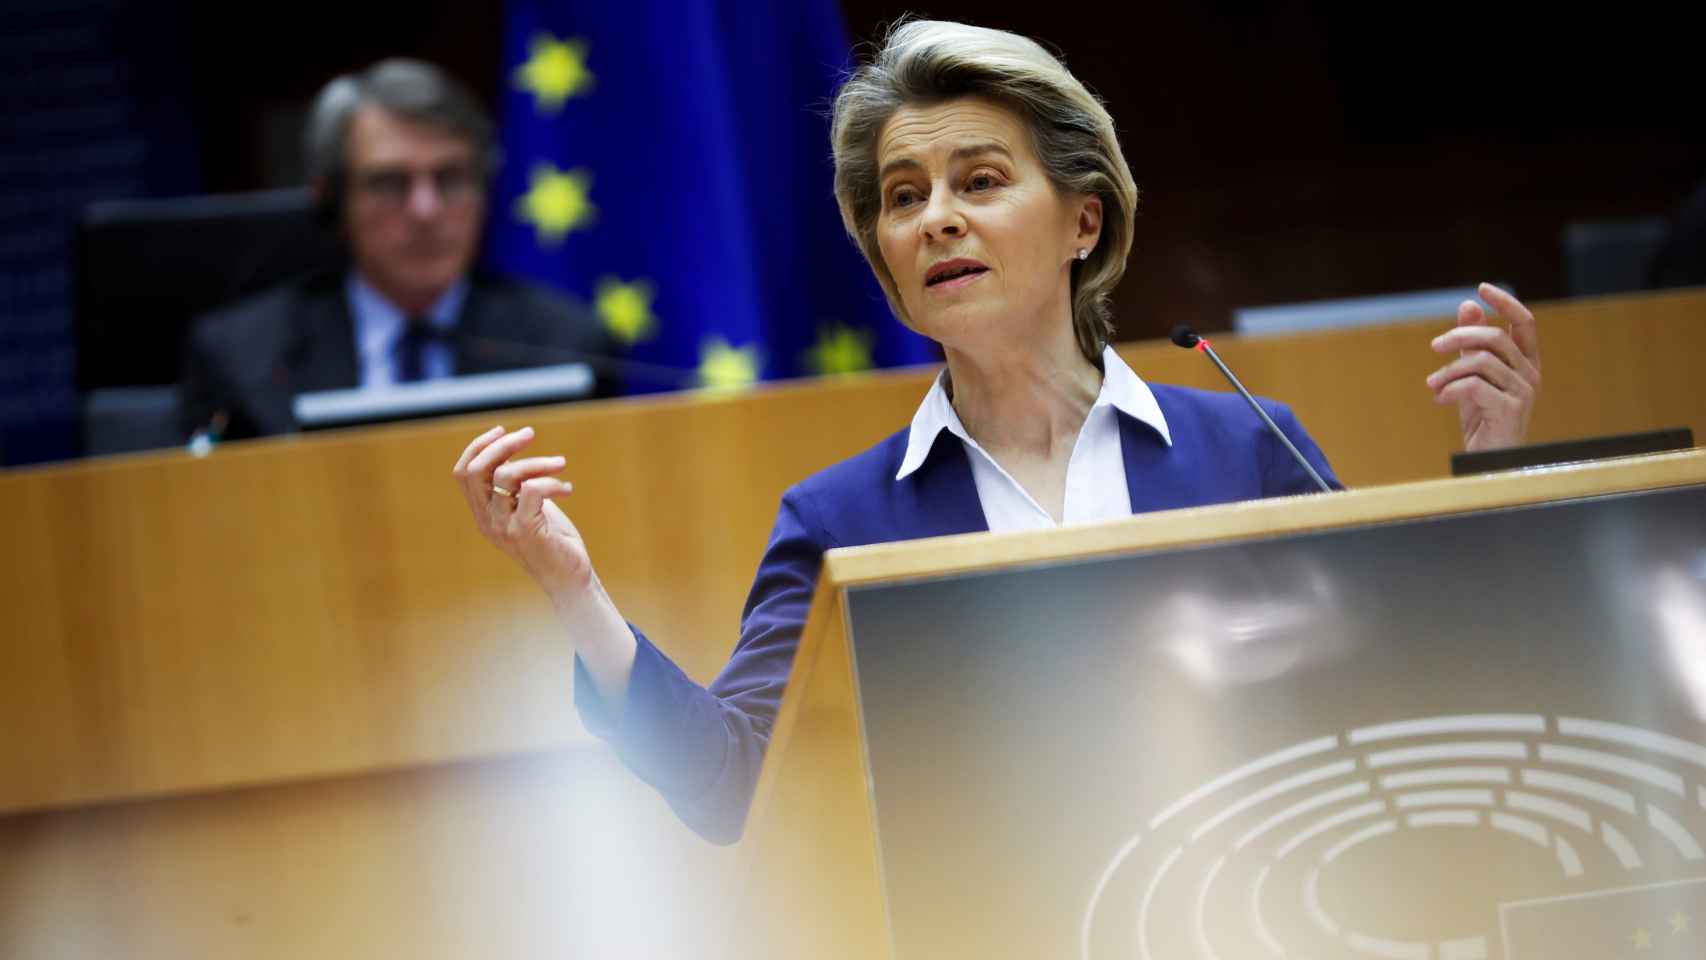 La presidenta de la Comisión, Ursula von der Leyen, durante una comparecencia en la Eurocámara